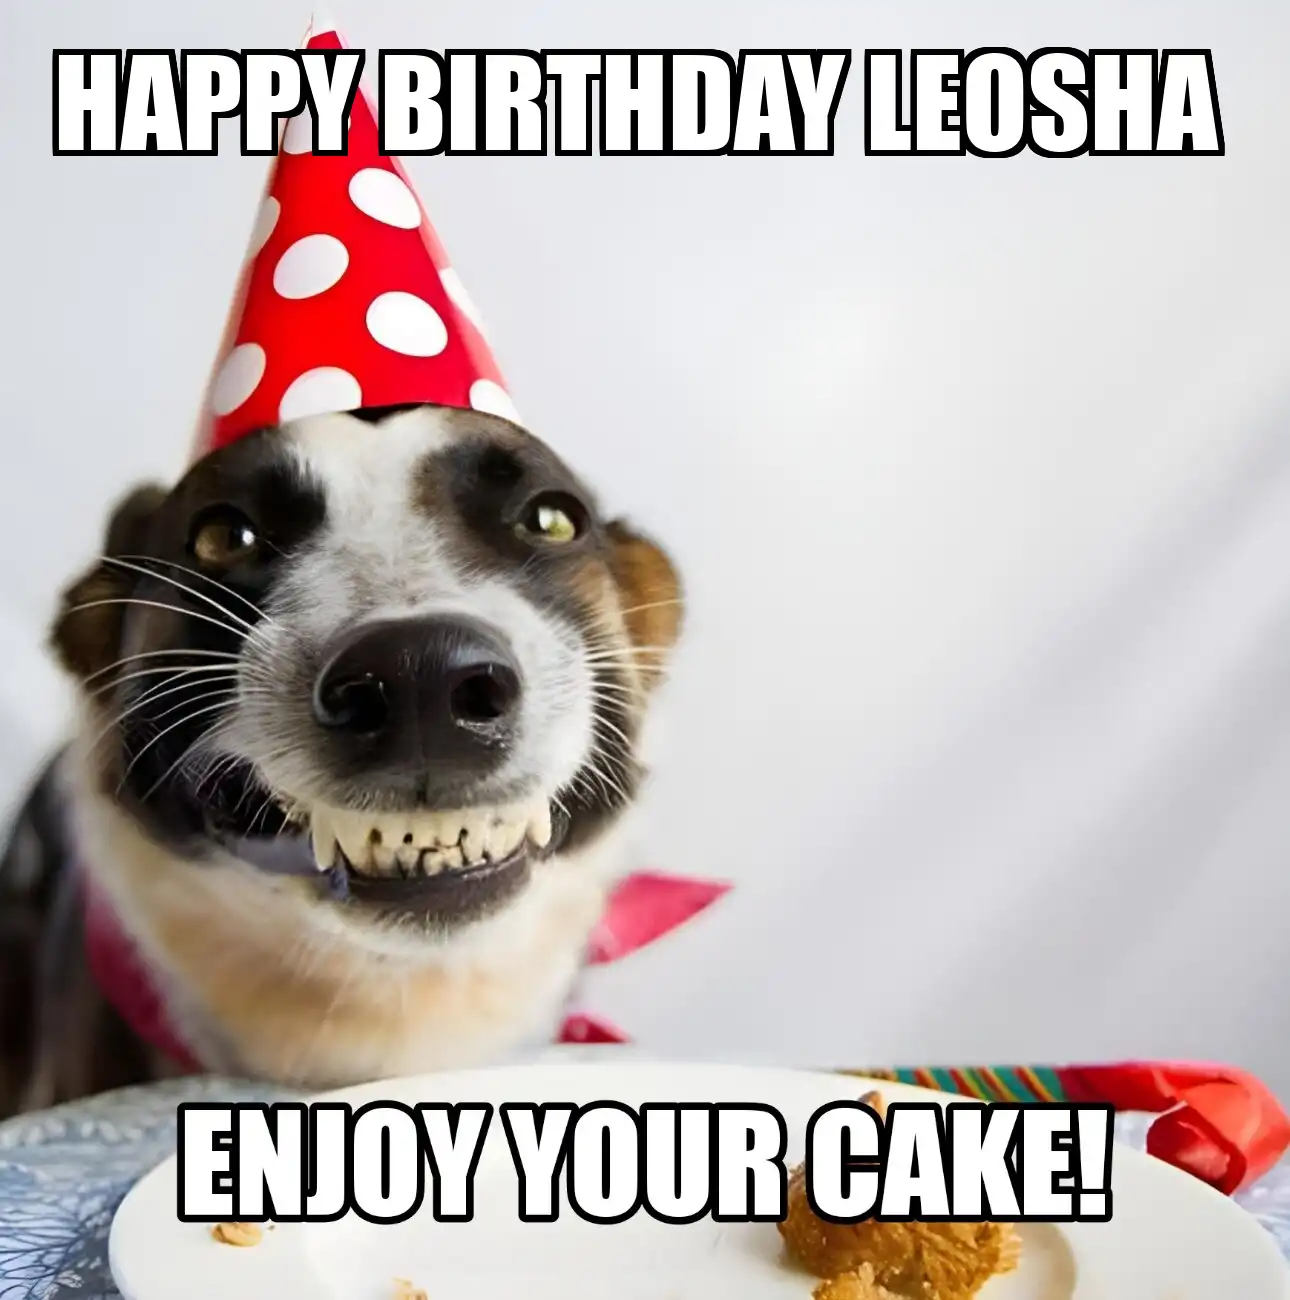 Happy Birthday Leosha Enjoy Your Cake Dog Meme